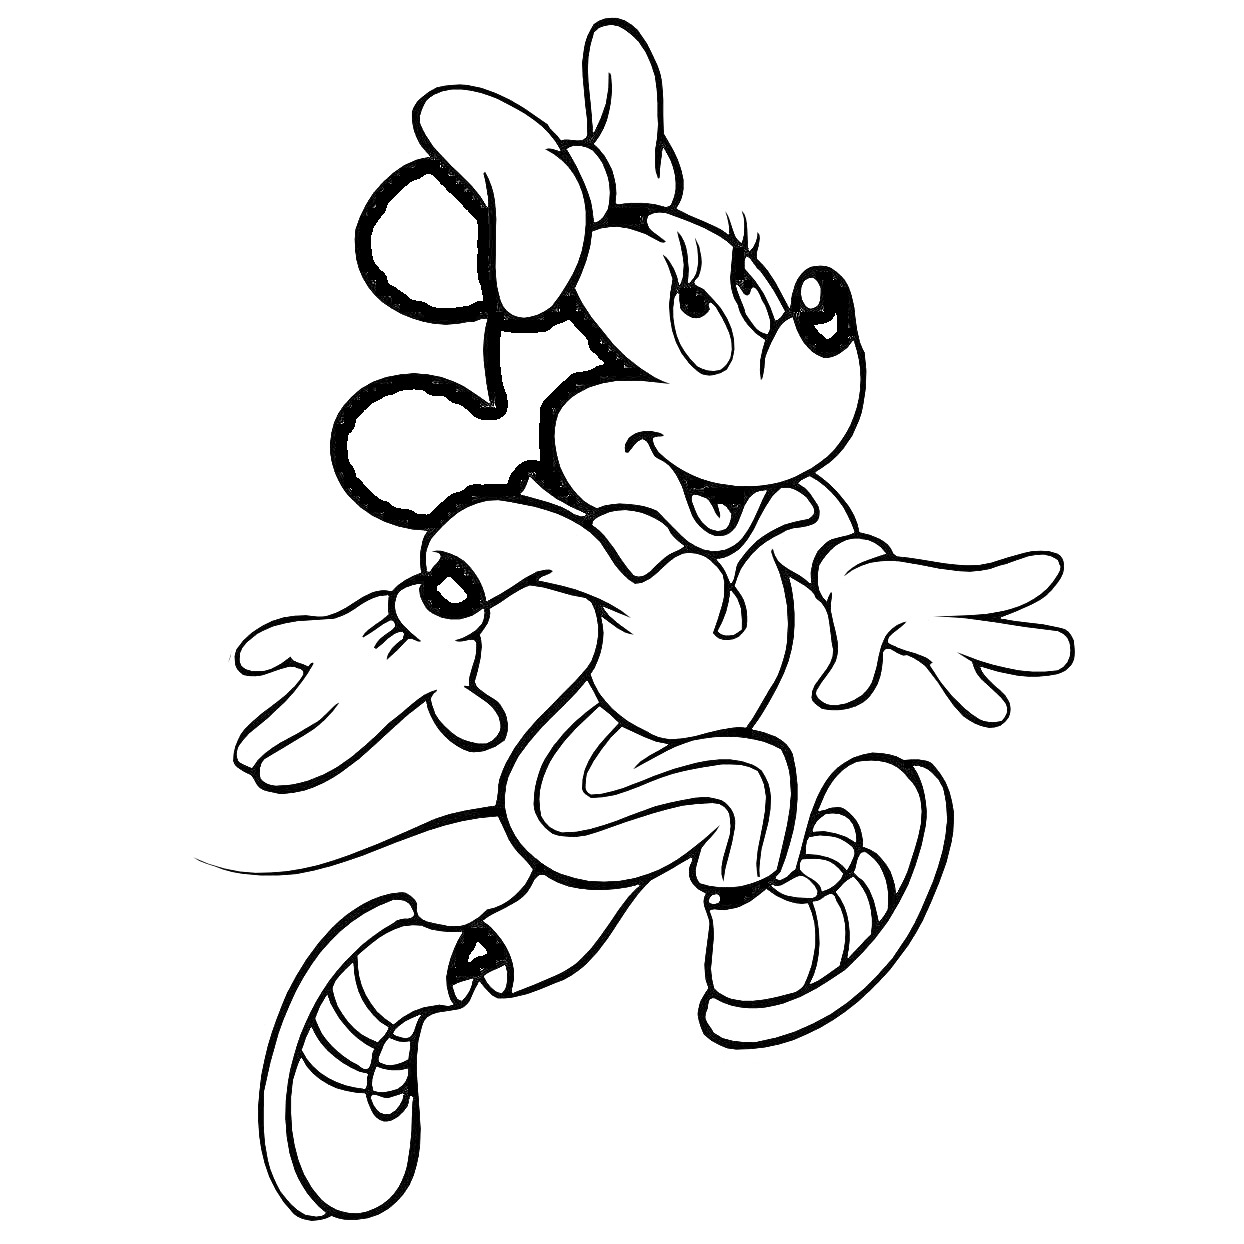 Раскраска Минни Маус в прыжке с бантиком на голове